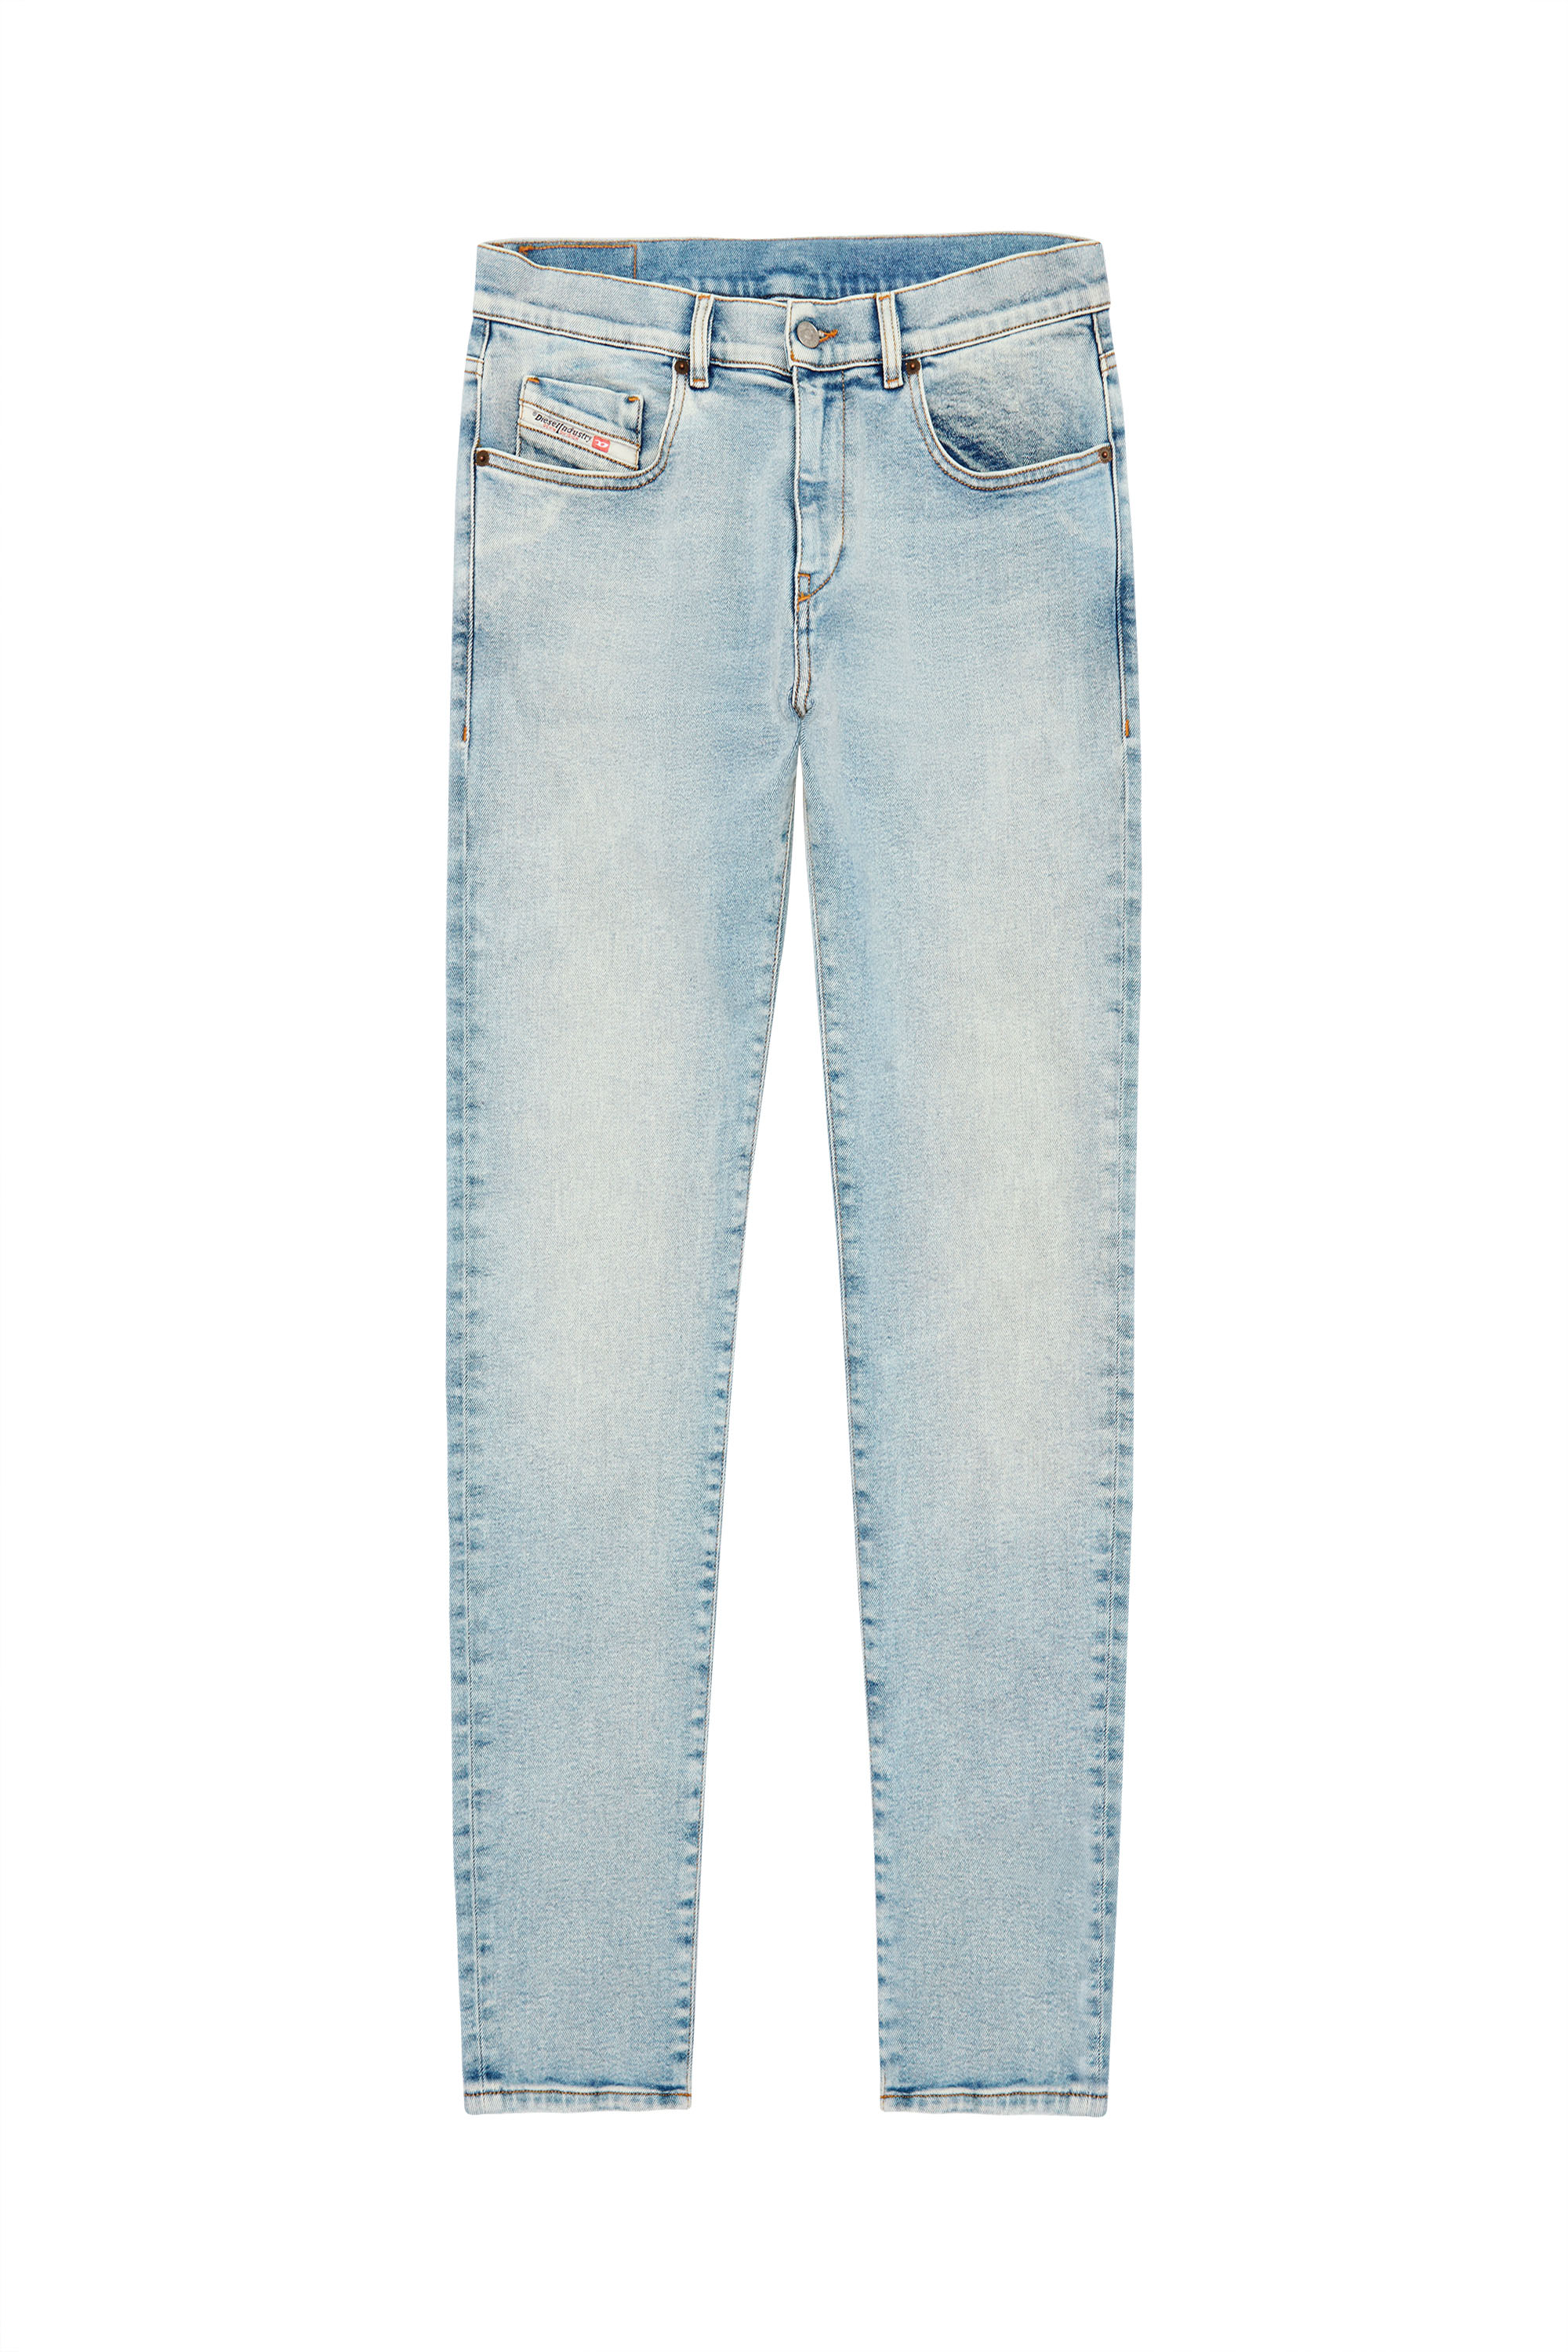 Diesel - Man Slim Jeans 2019 D-Strukt 09C08, Light Blue - Image 8